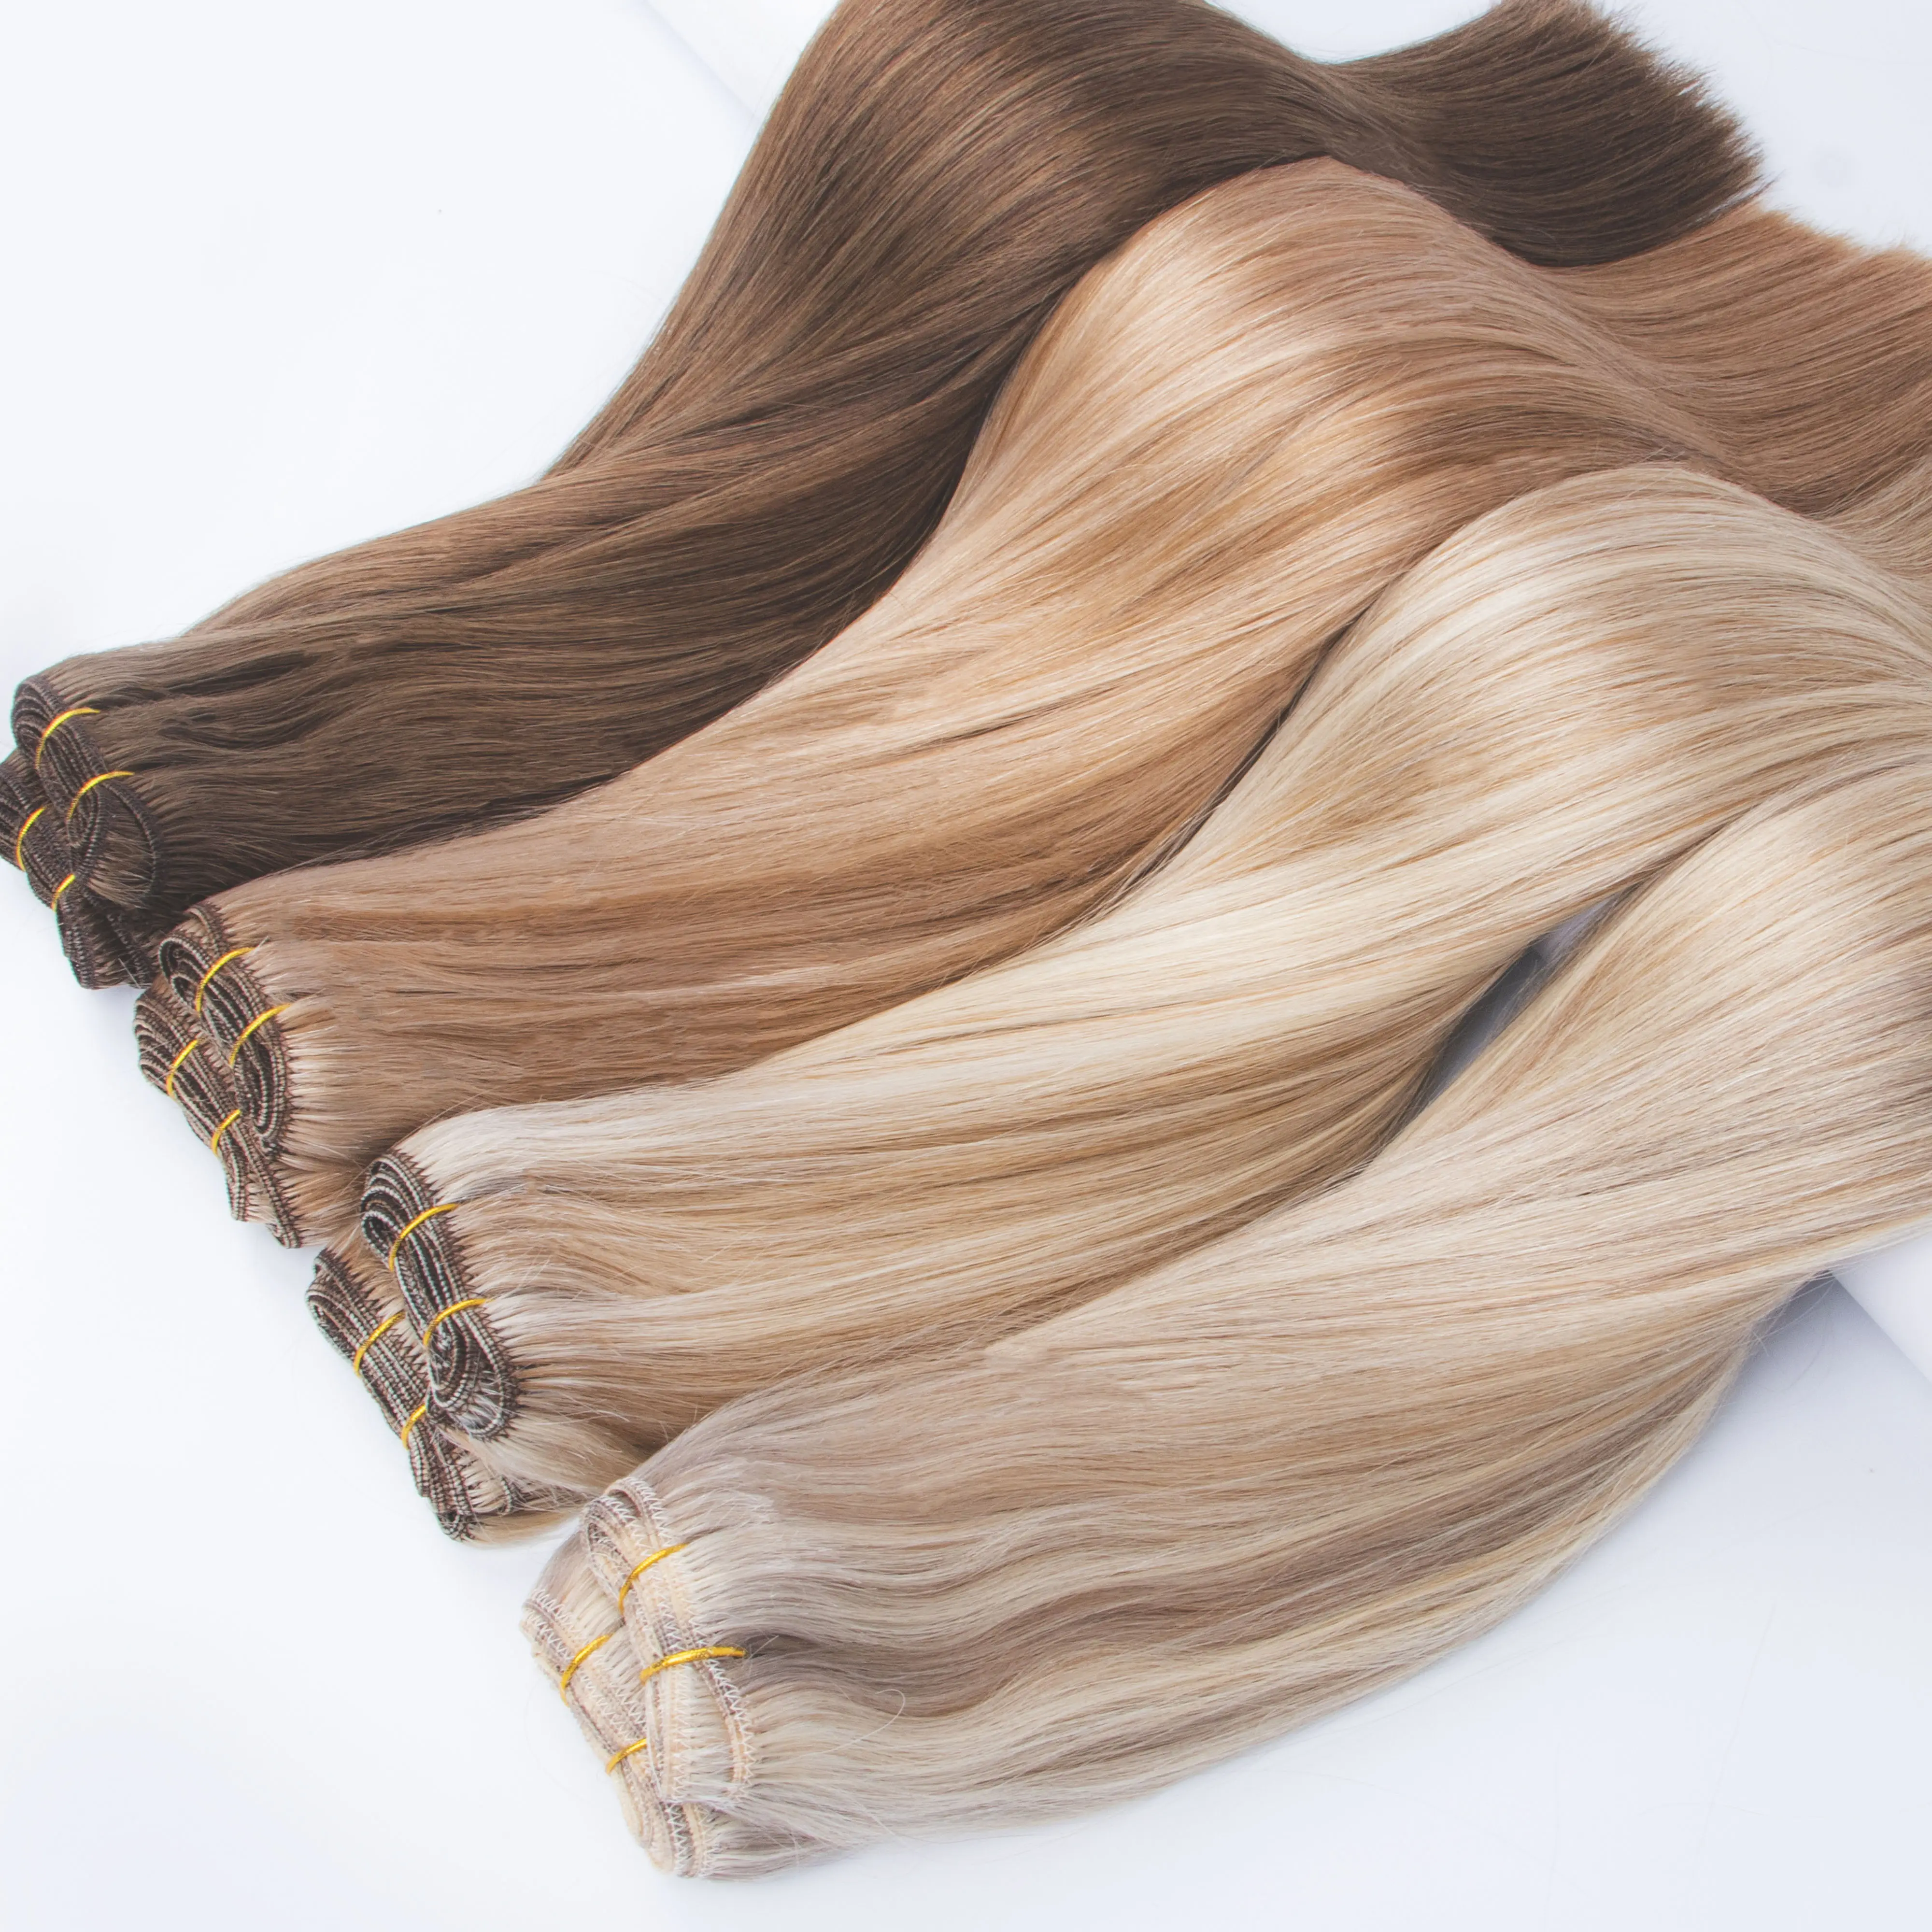 Extensions de trame doublement étirées Trame de cheveux humains blond Coudre dans les extensions de cheveux 24 pouces Trames de cheveux Remy